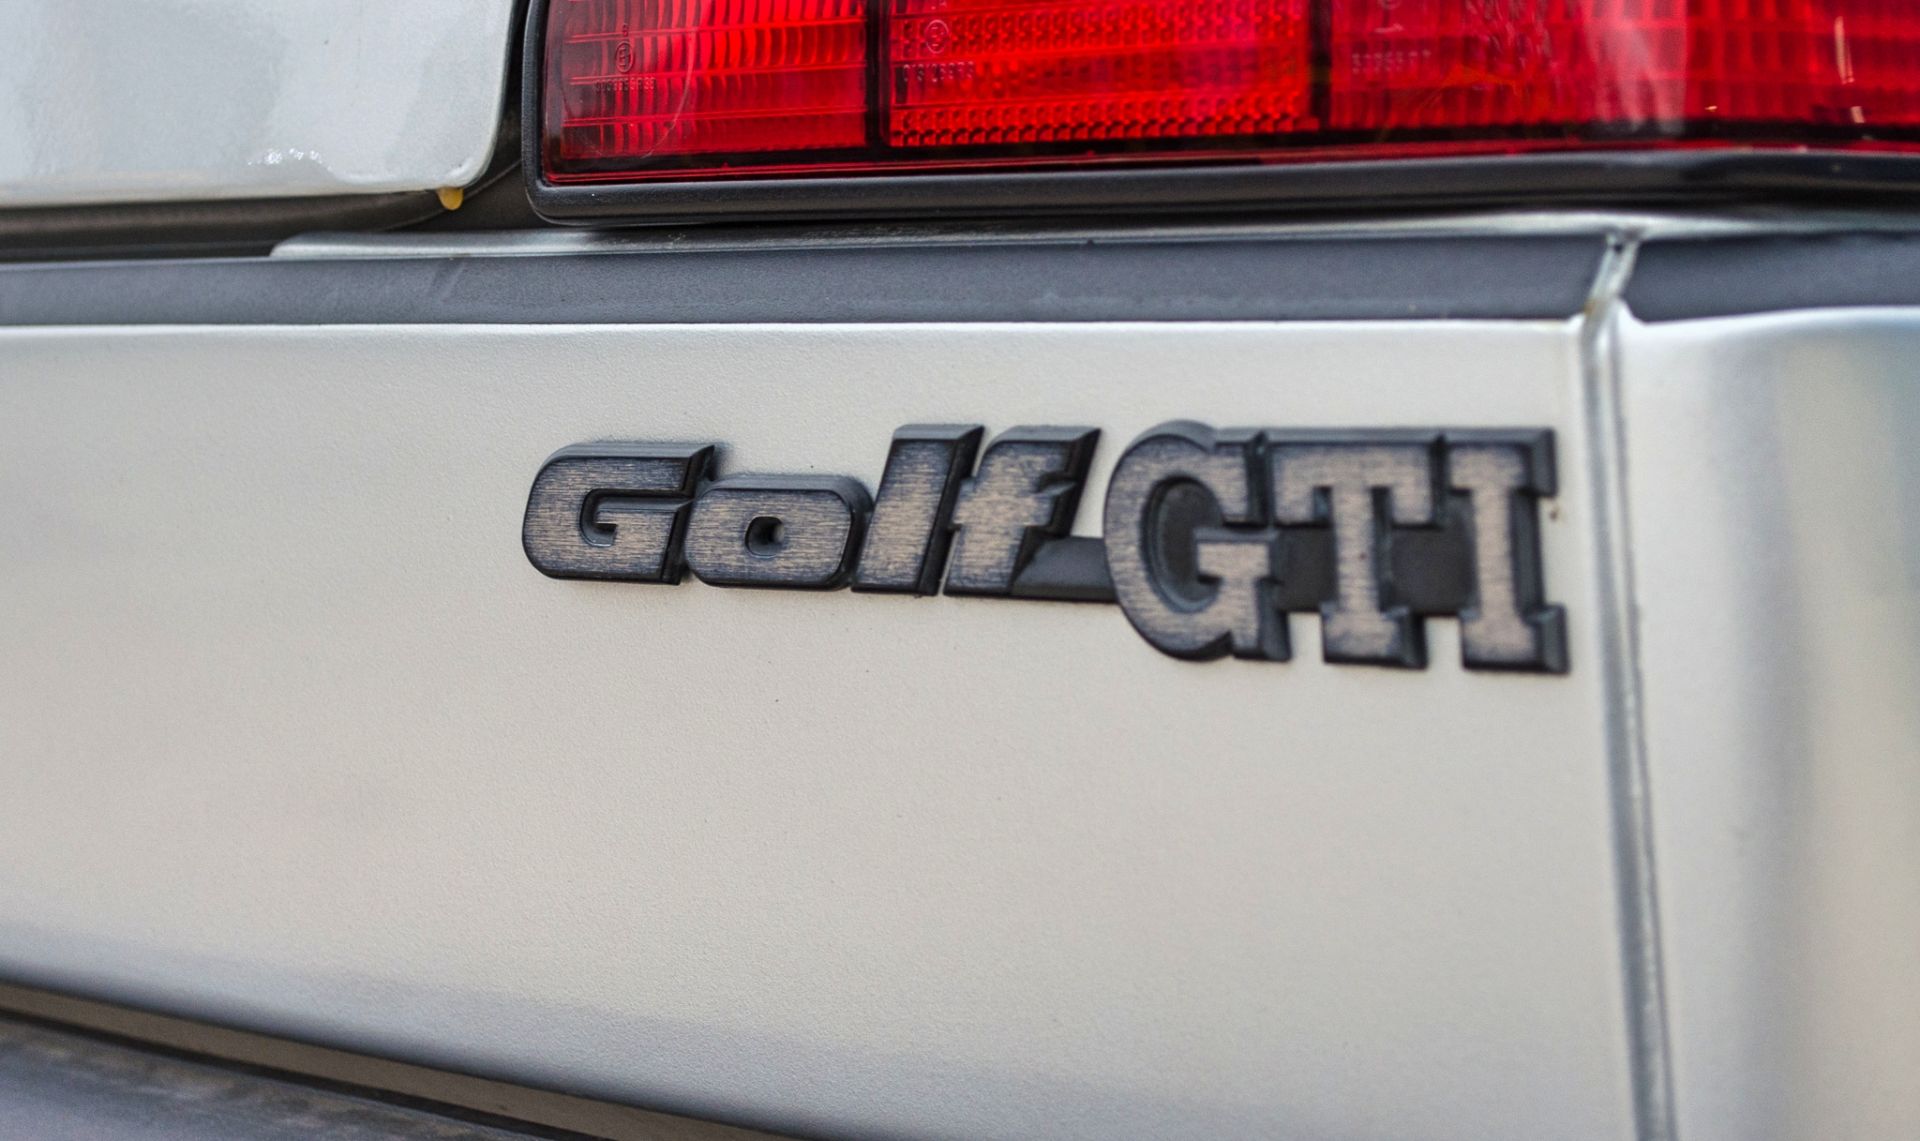 1989 Volkswagen Golf GTI 1.8 litre 3 door hatchback - Image 26 of 52